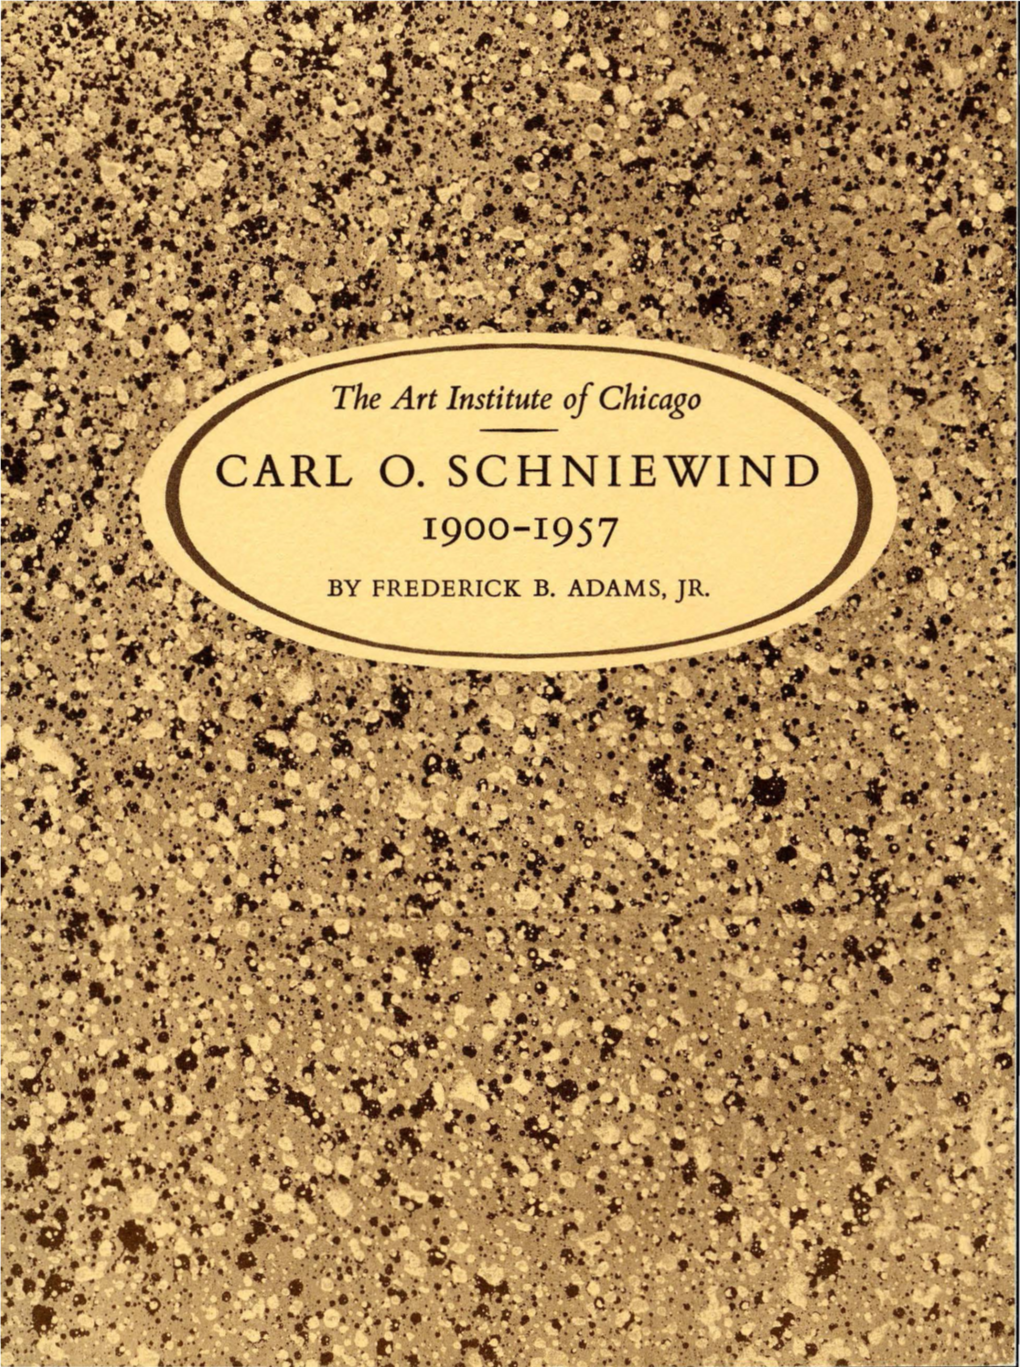 Carl 0. Schniewind 1900-1957